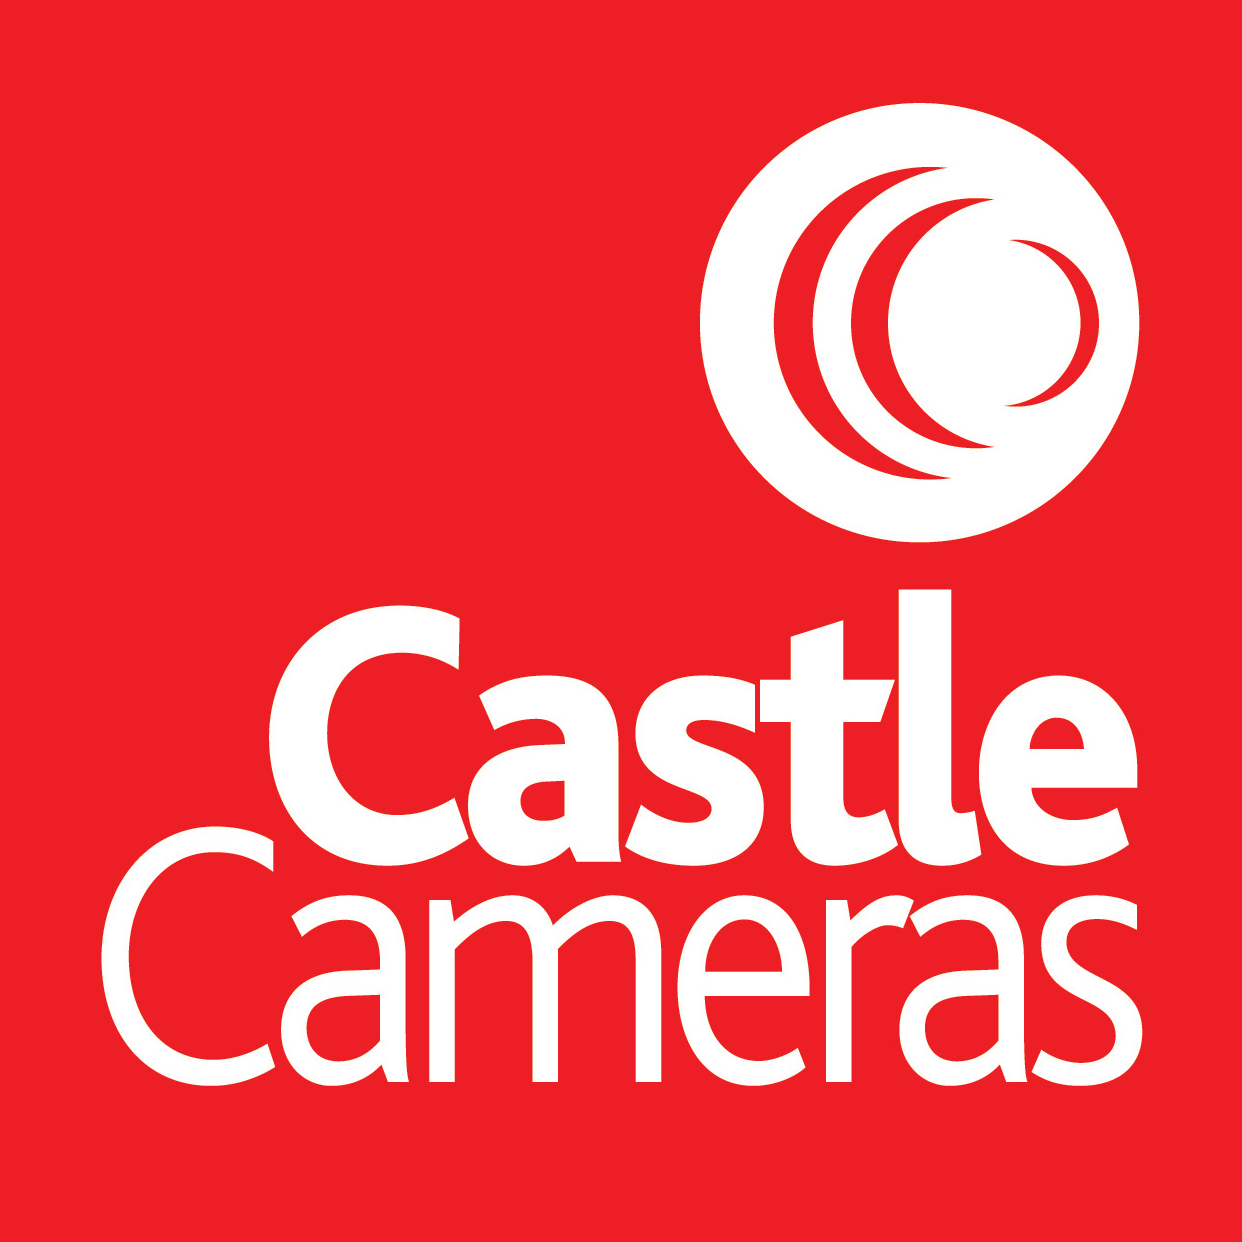 Castle Cameras